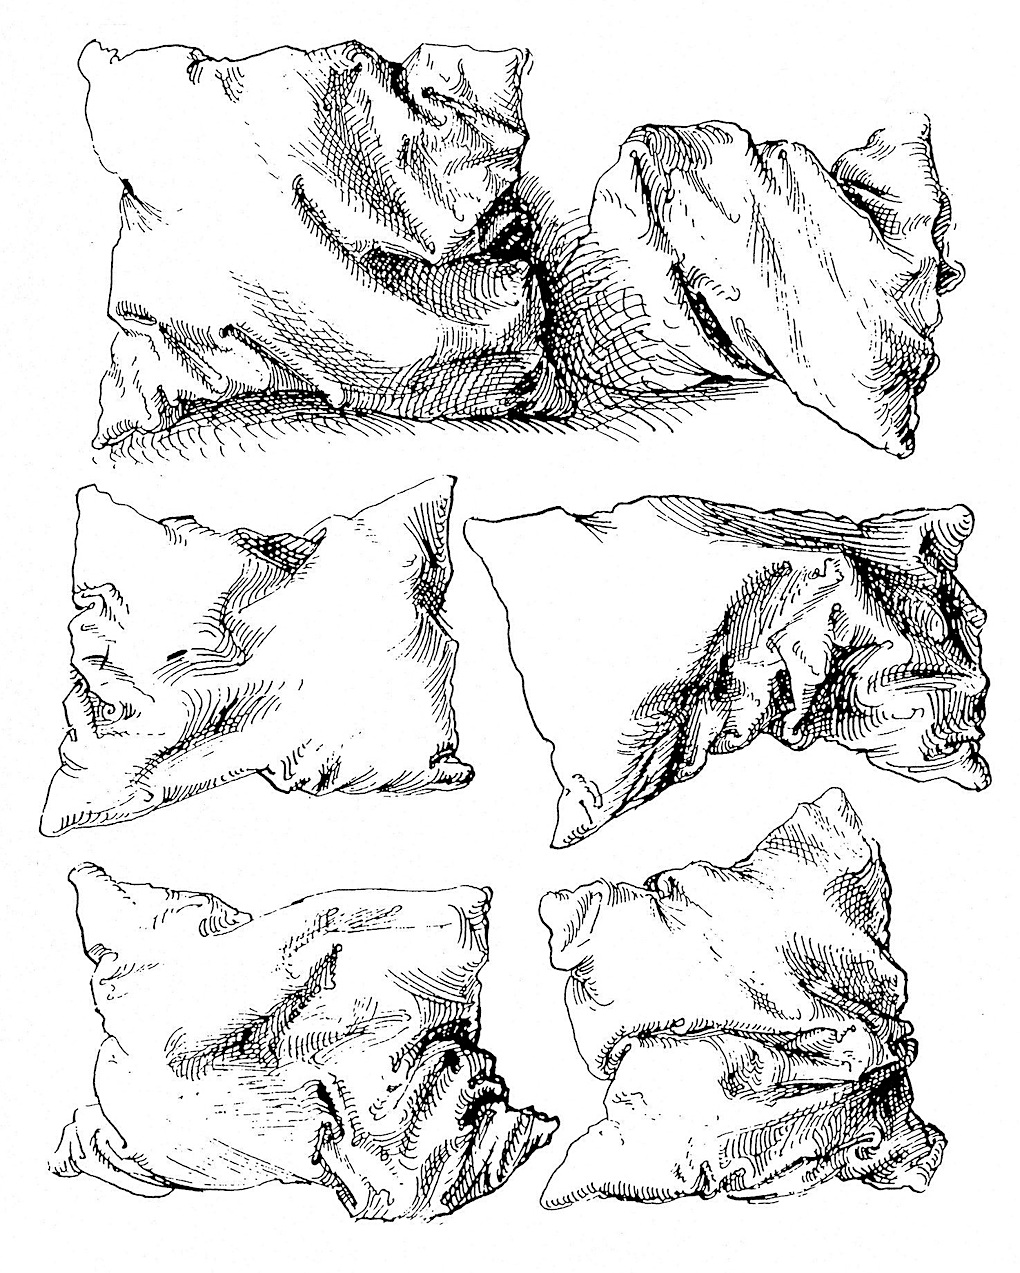 studies of a pillow by Albrecht Dürer, 1493